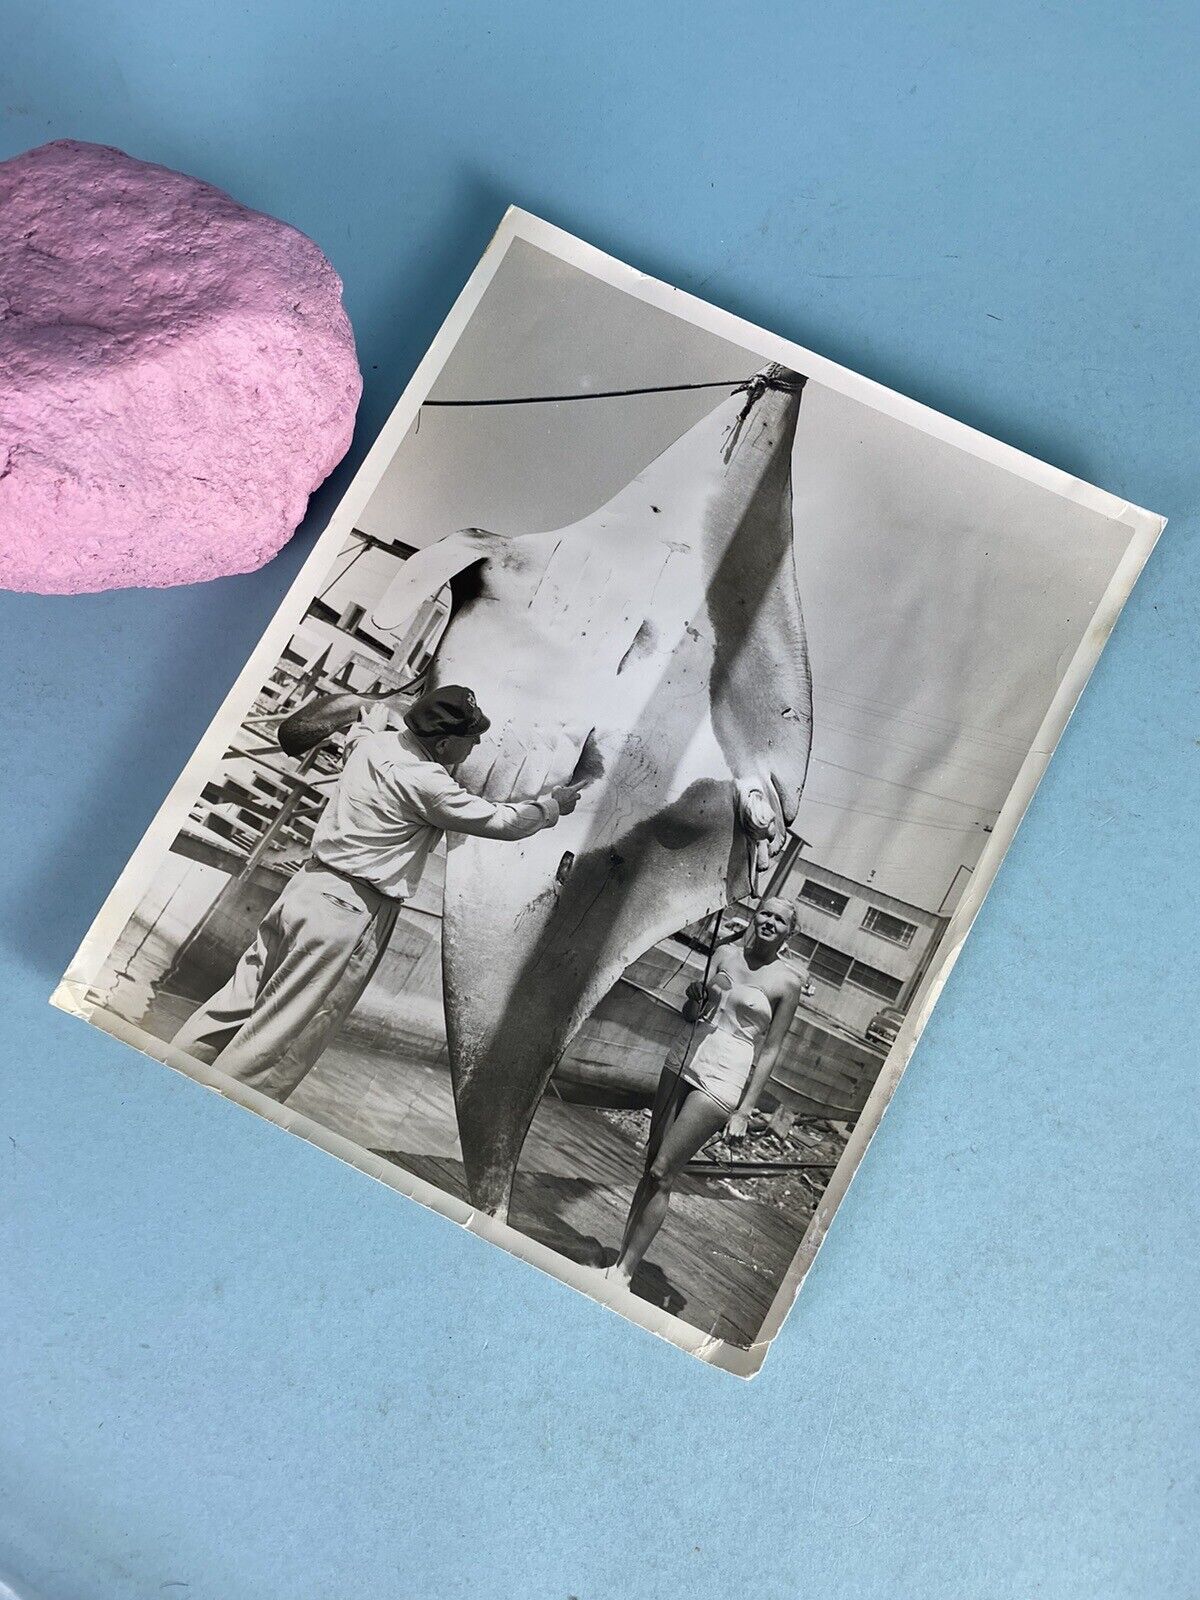 Balboa Angling Club 1952 Judget Inspecting Caught Ocean Manta Ray Photo